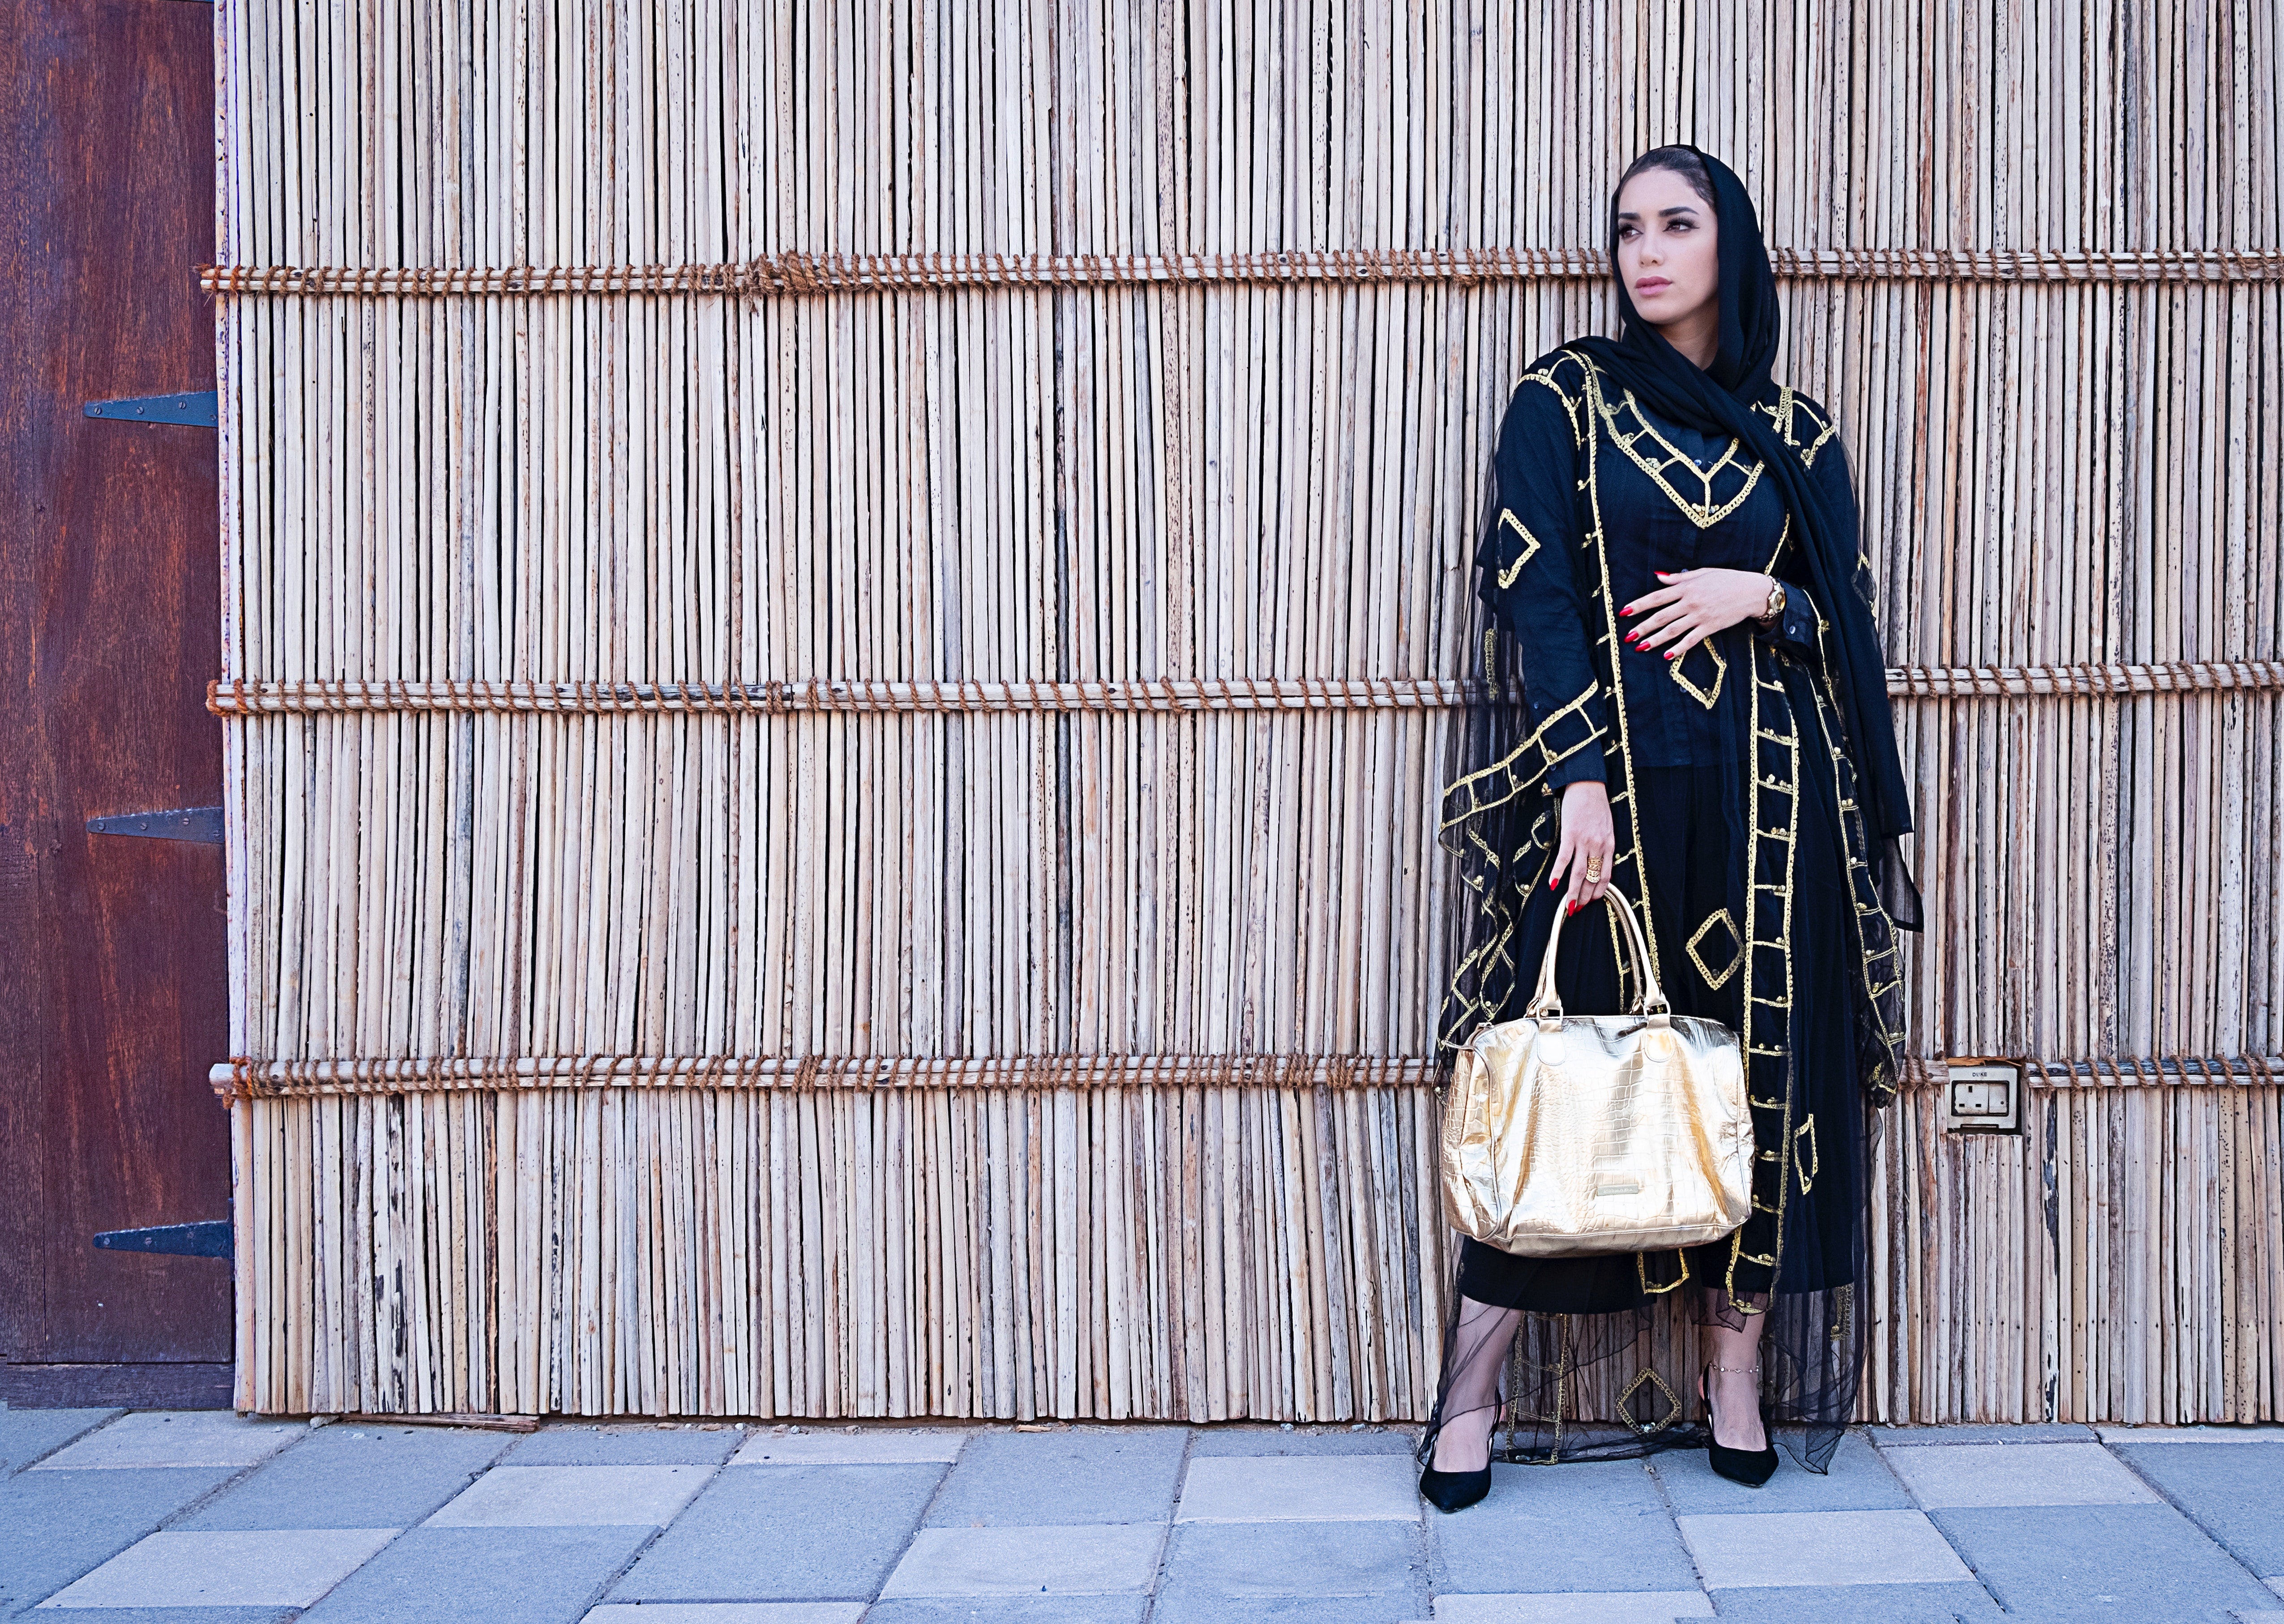 beautiful abaya online